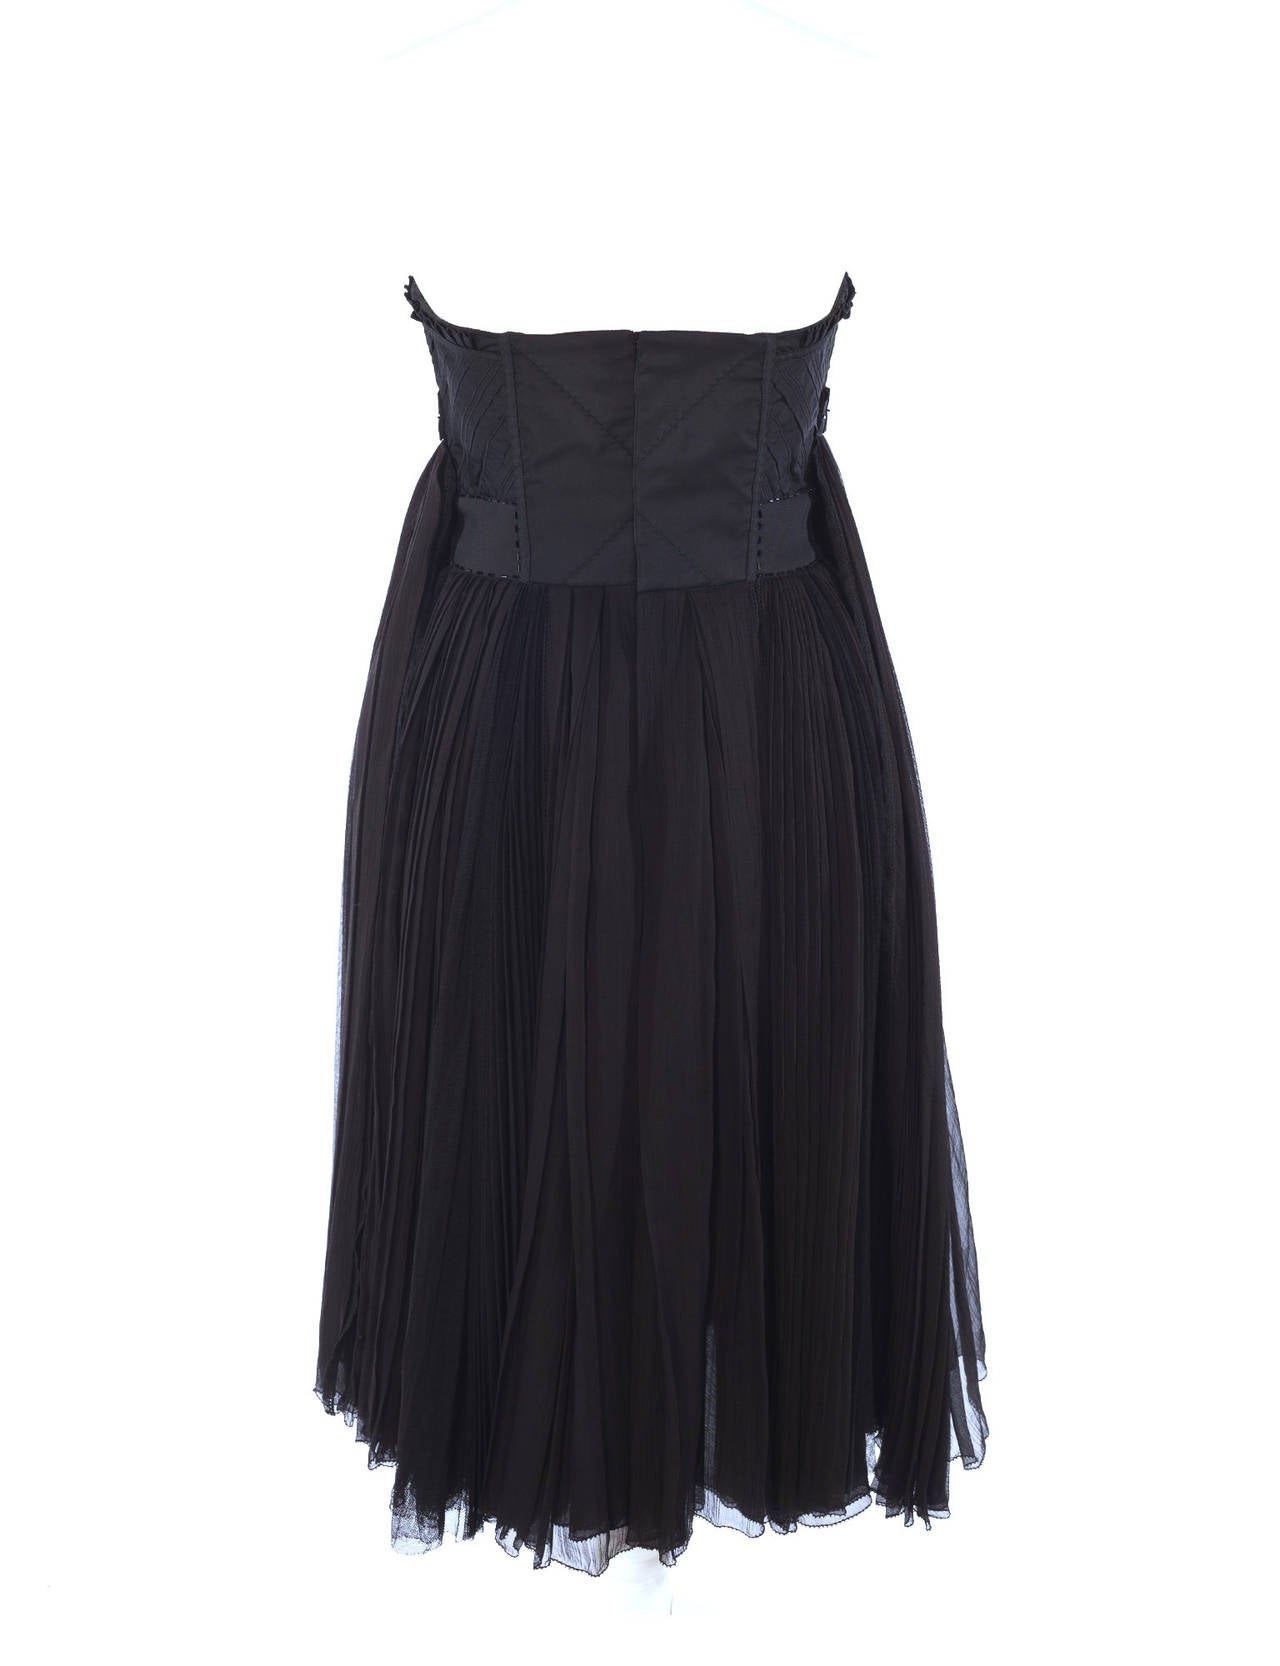 Women's Louis Vuitton by Marc Jacobs Black Bustier dress, Sz. S